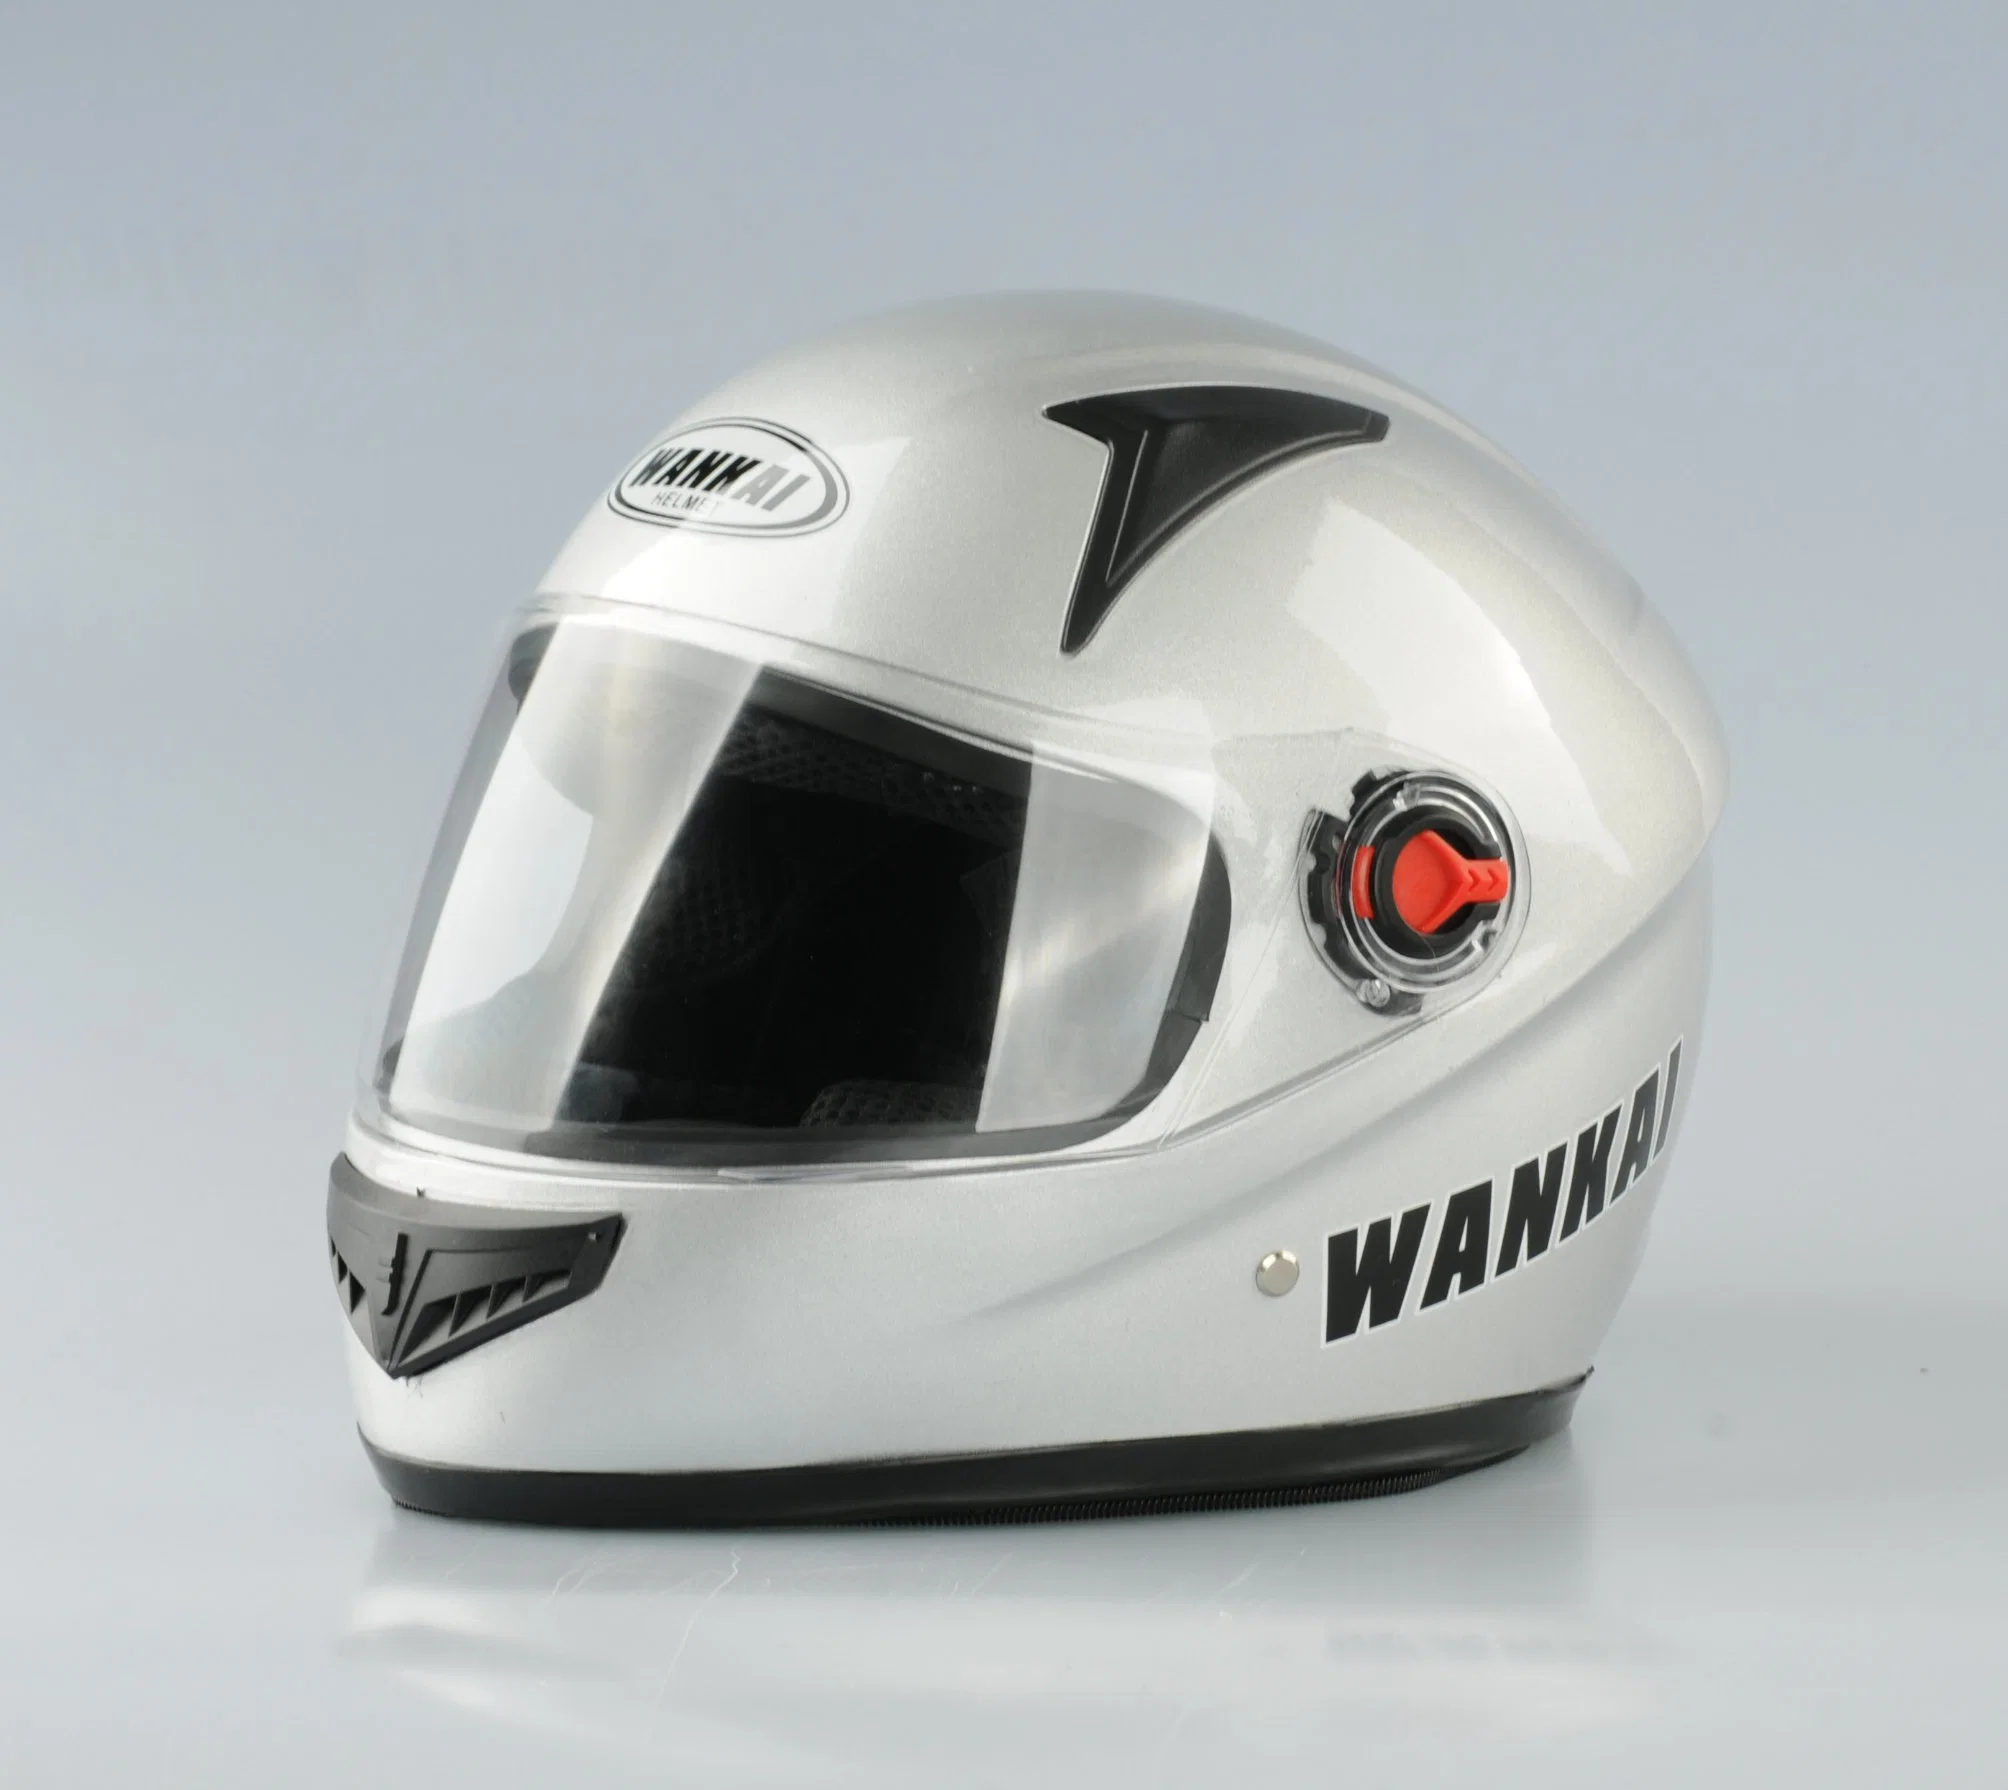 Nuevo casco de PP para las motocicletas, bicicletas, motos eléctricas